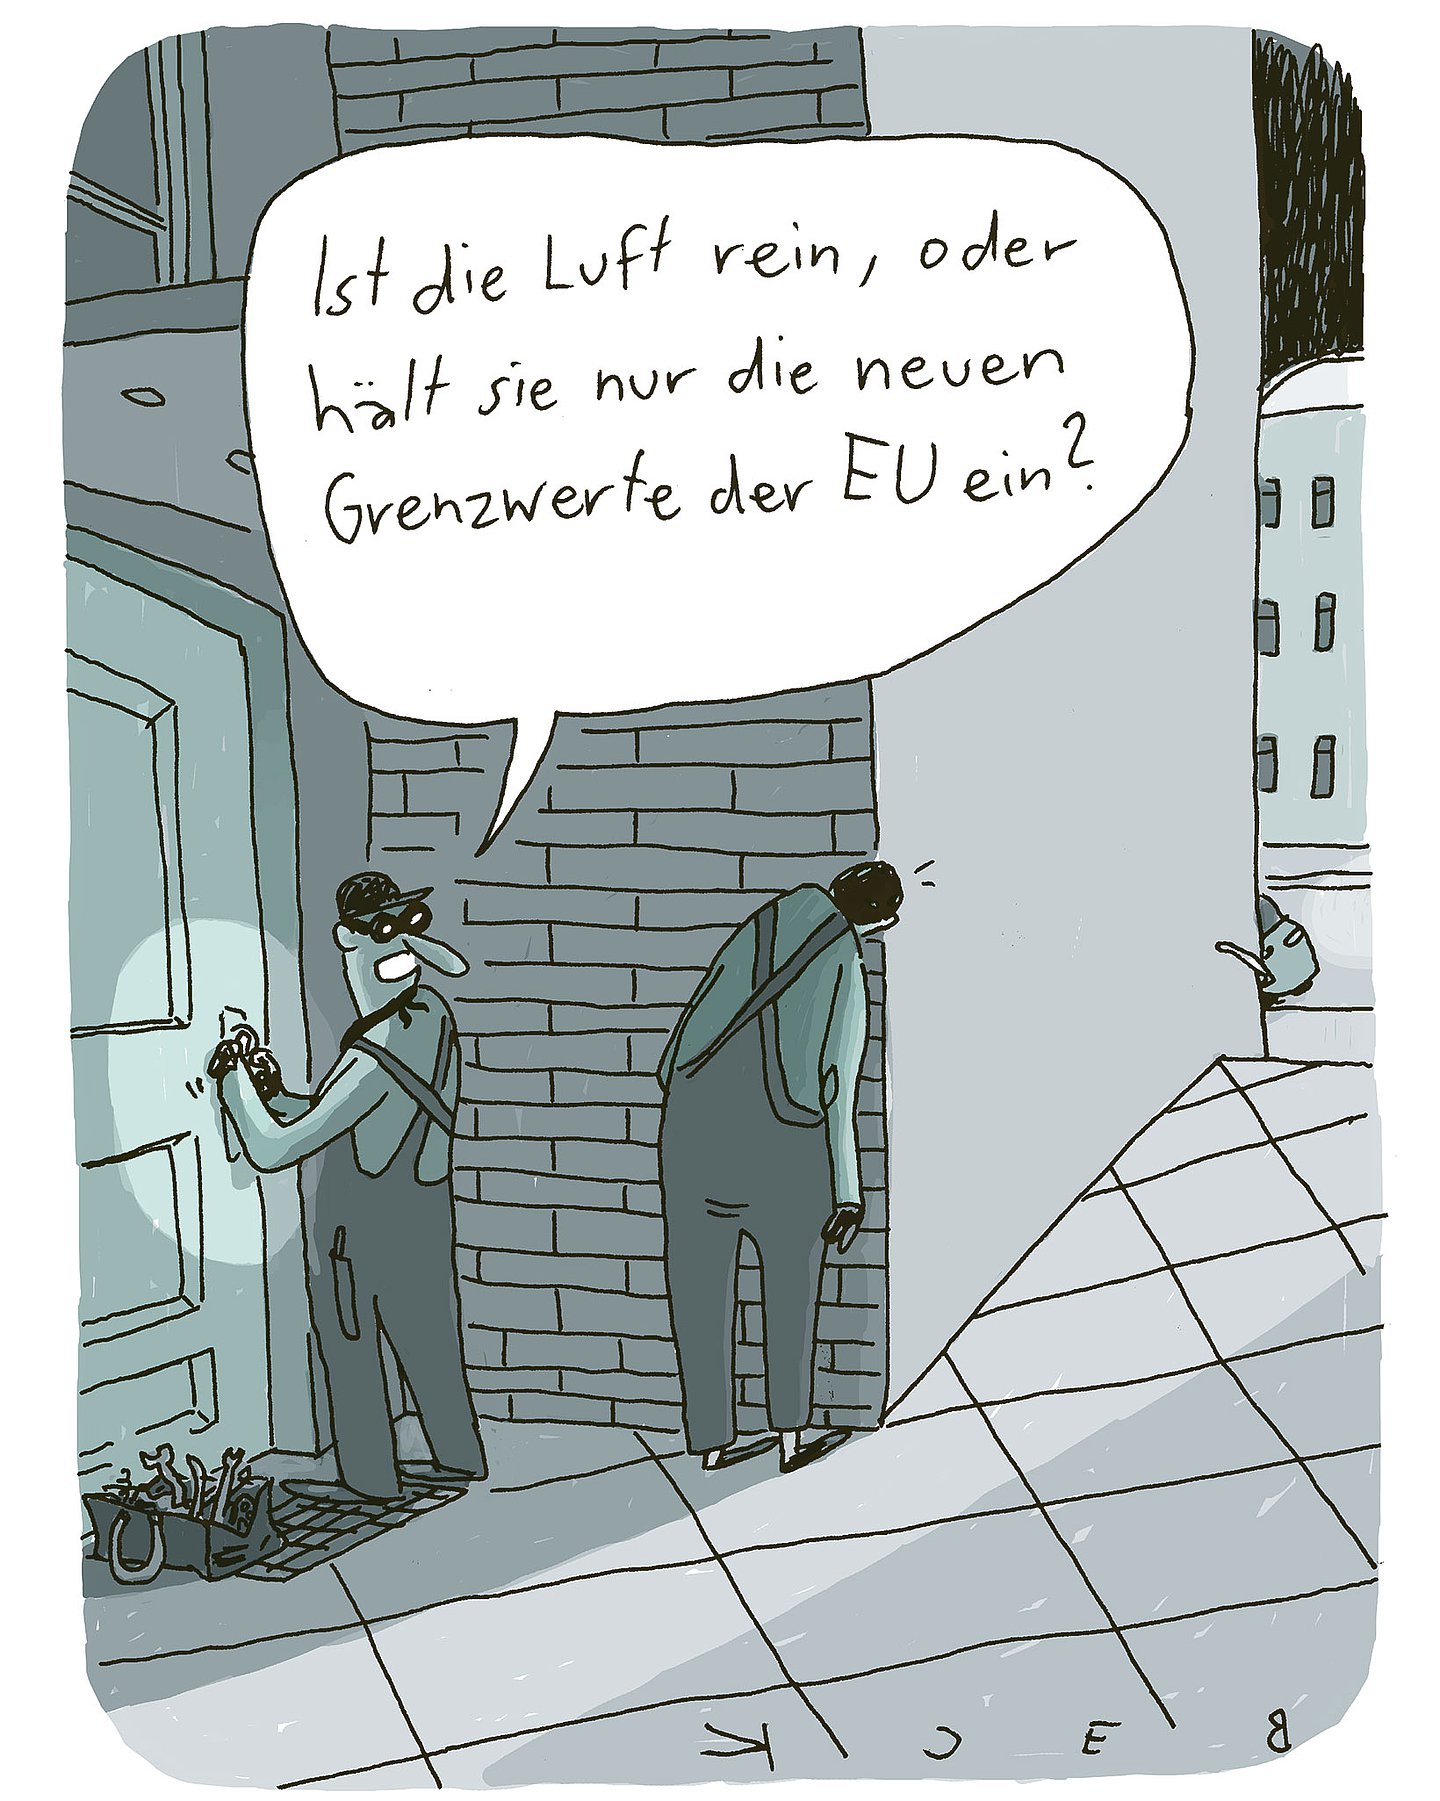 Cartoon von Beck: Zwei Einbrecher stehen vor einer Tür, einer steht Schmiere. Der an der Tür sagt: "Ist die Luft rein, oder hält sie nur die neuen Grenzwerte der EU ein?"